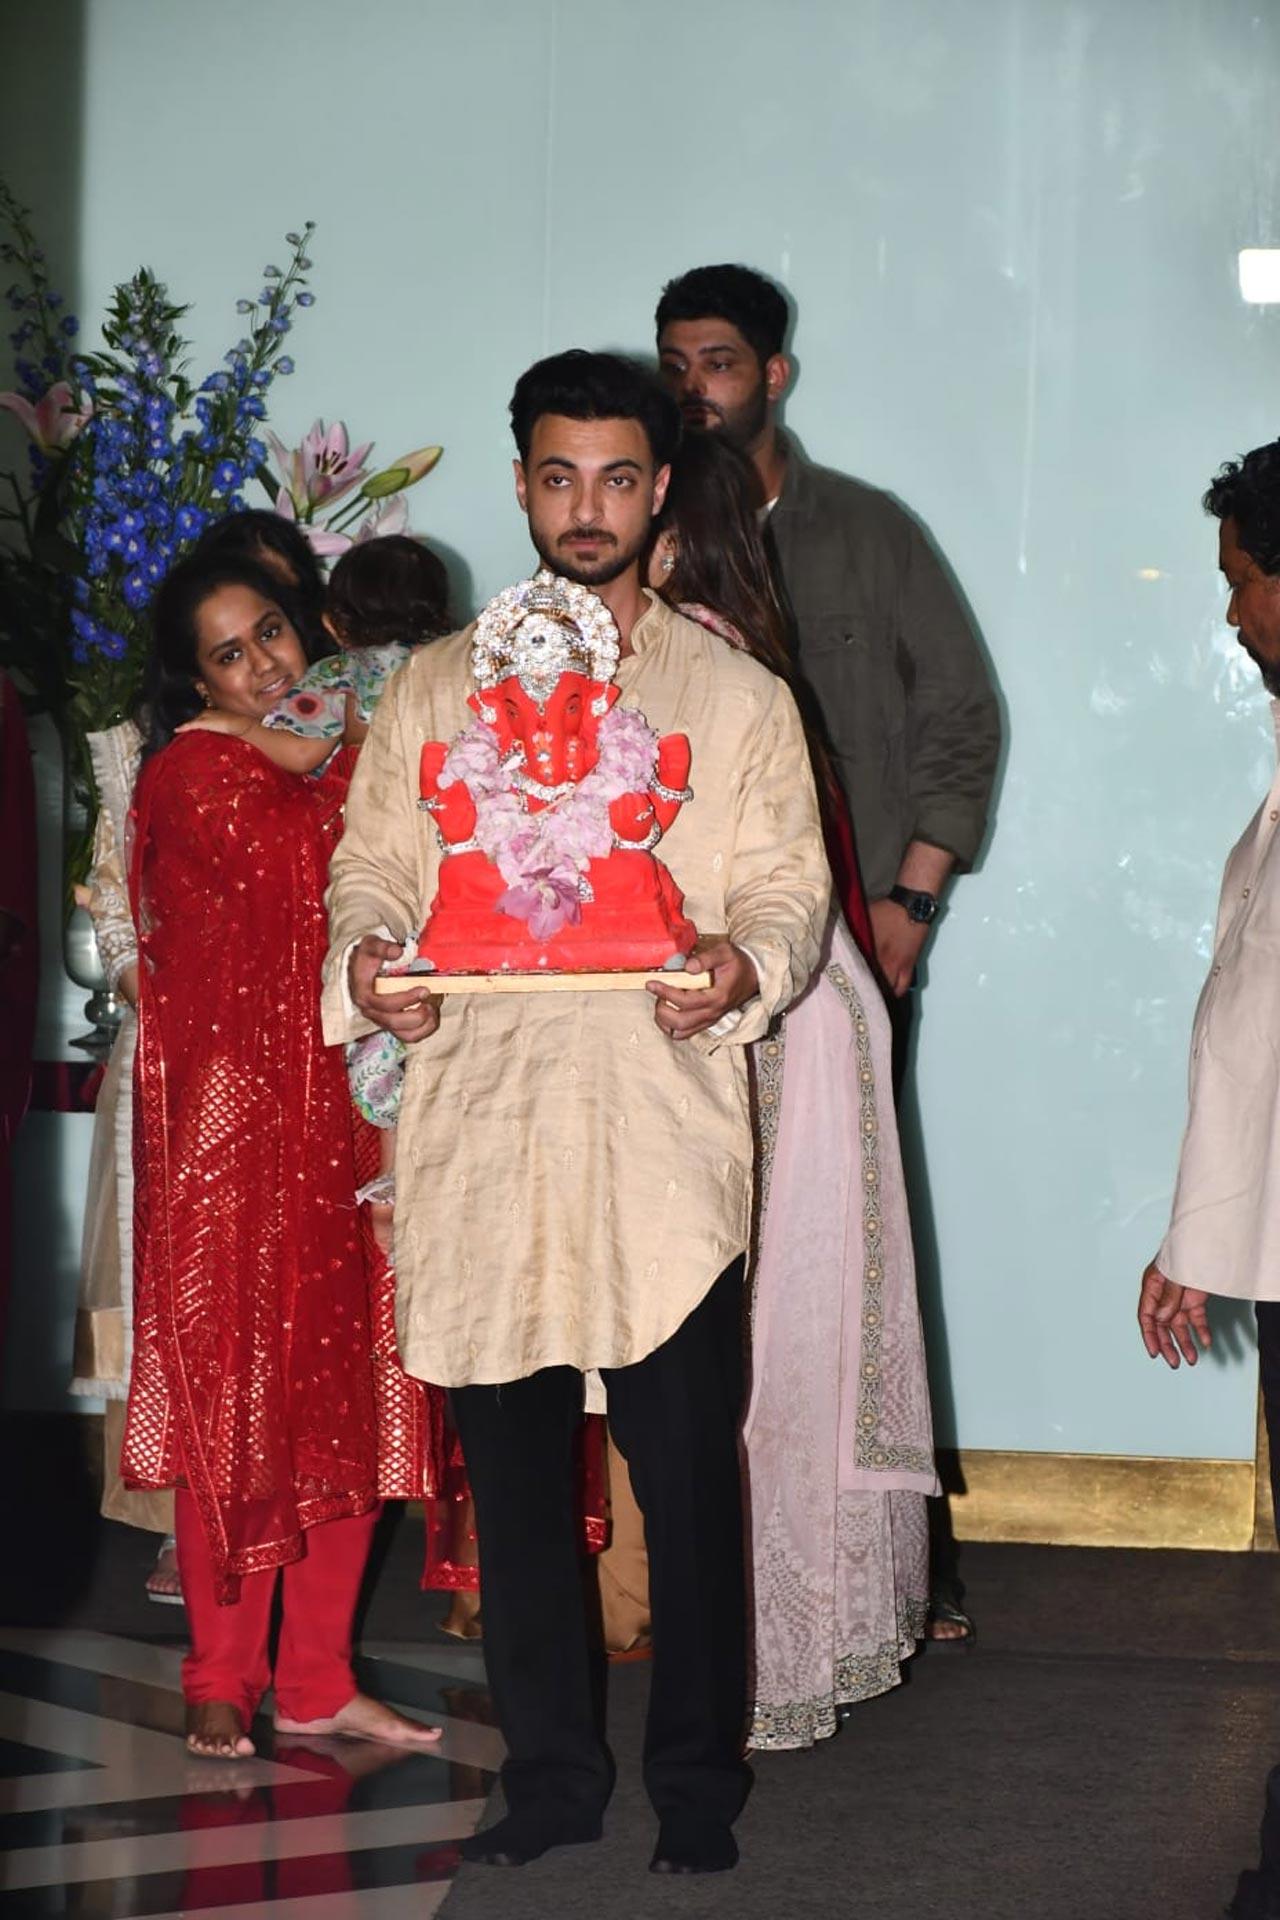 Salman Khan's sister Arpita Khan Sharma welcomed Lord Ganesha on August 31. The family hosted the visarjan ceremony on September 1 2022